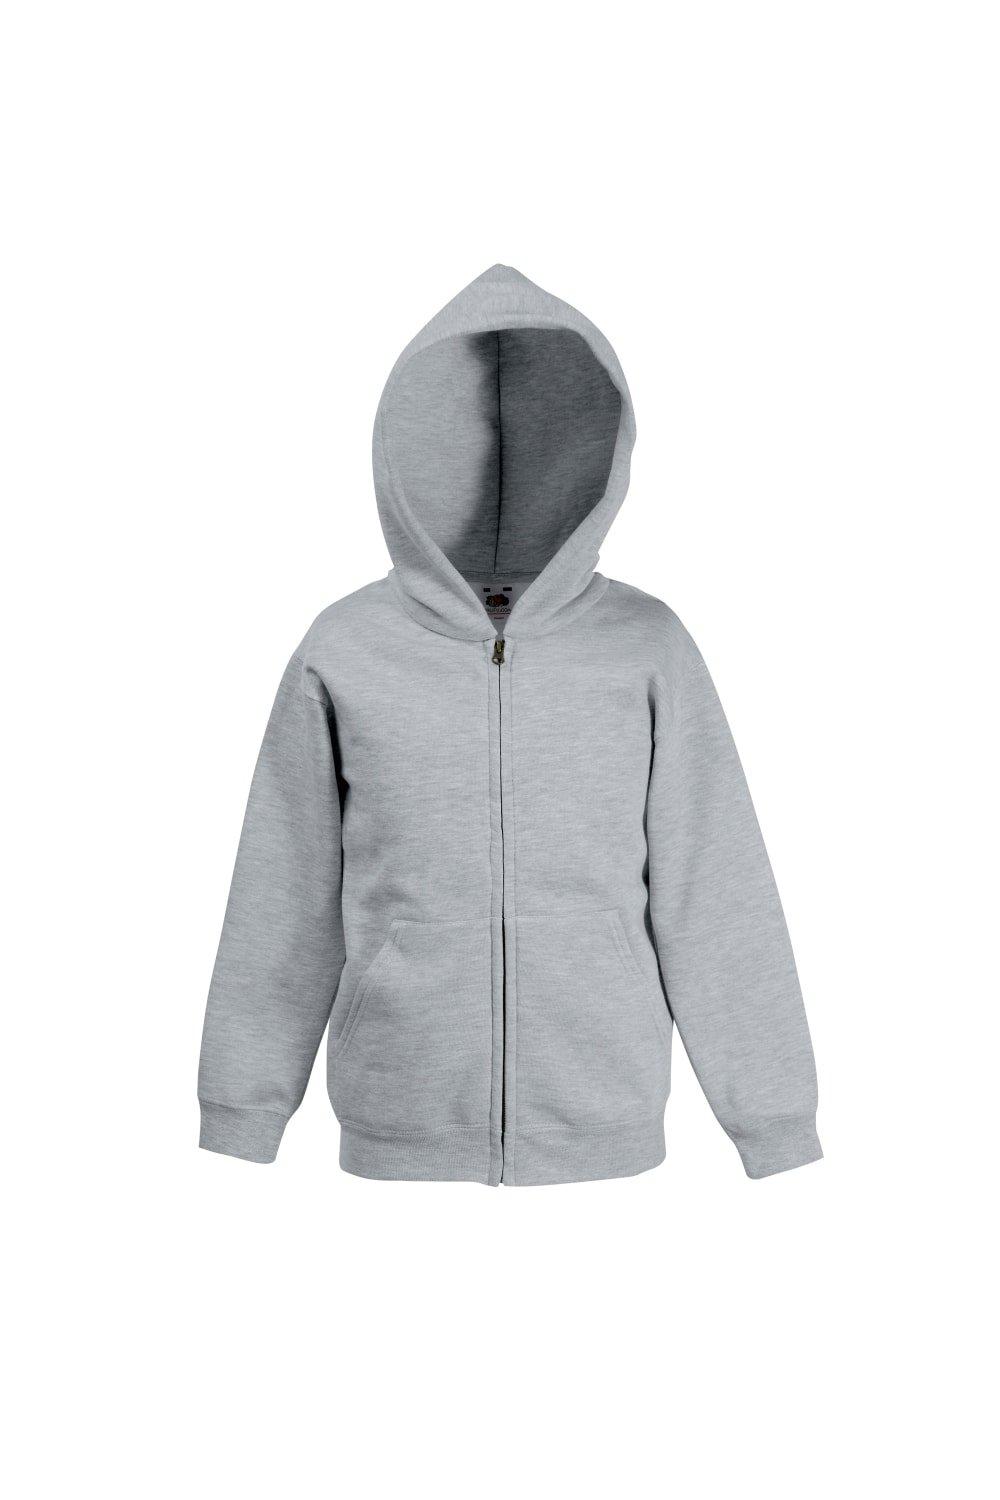 Premium 70/30 Hooded Sweatshirt / Hoodie